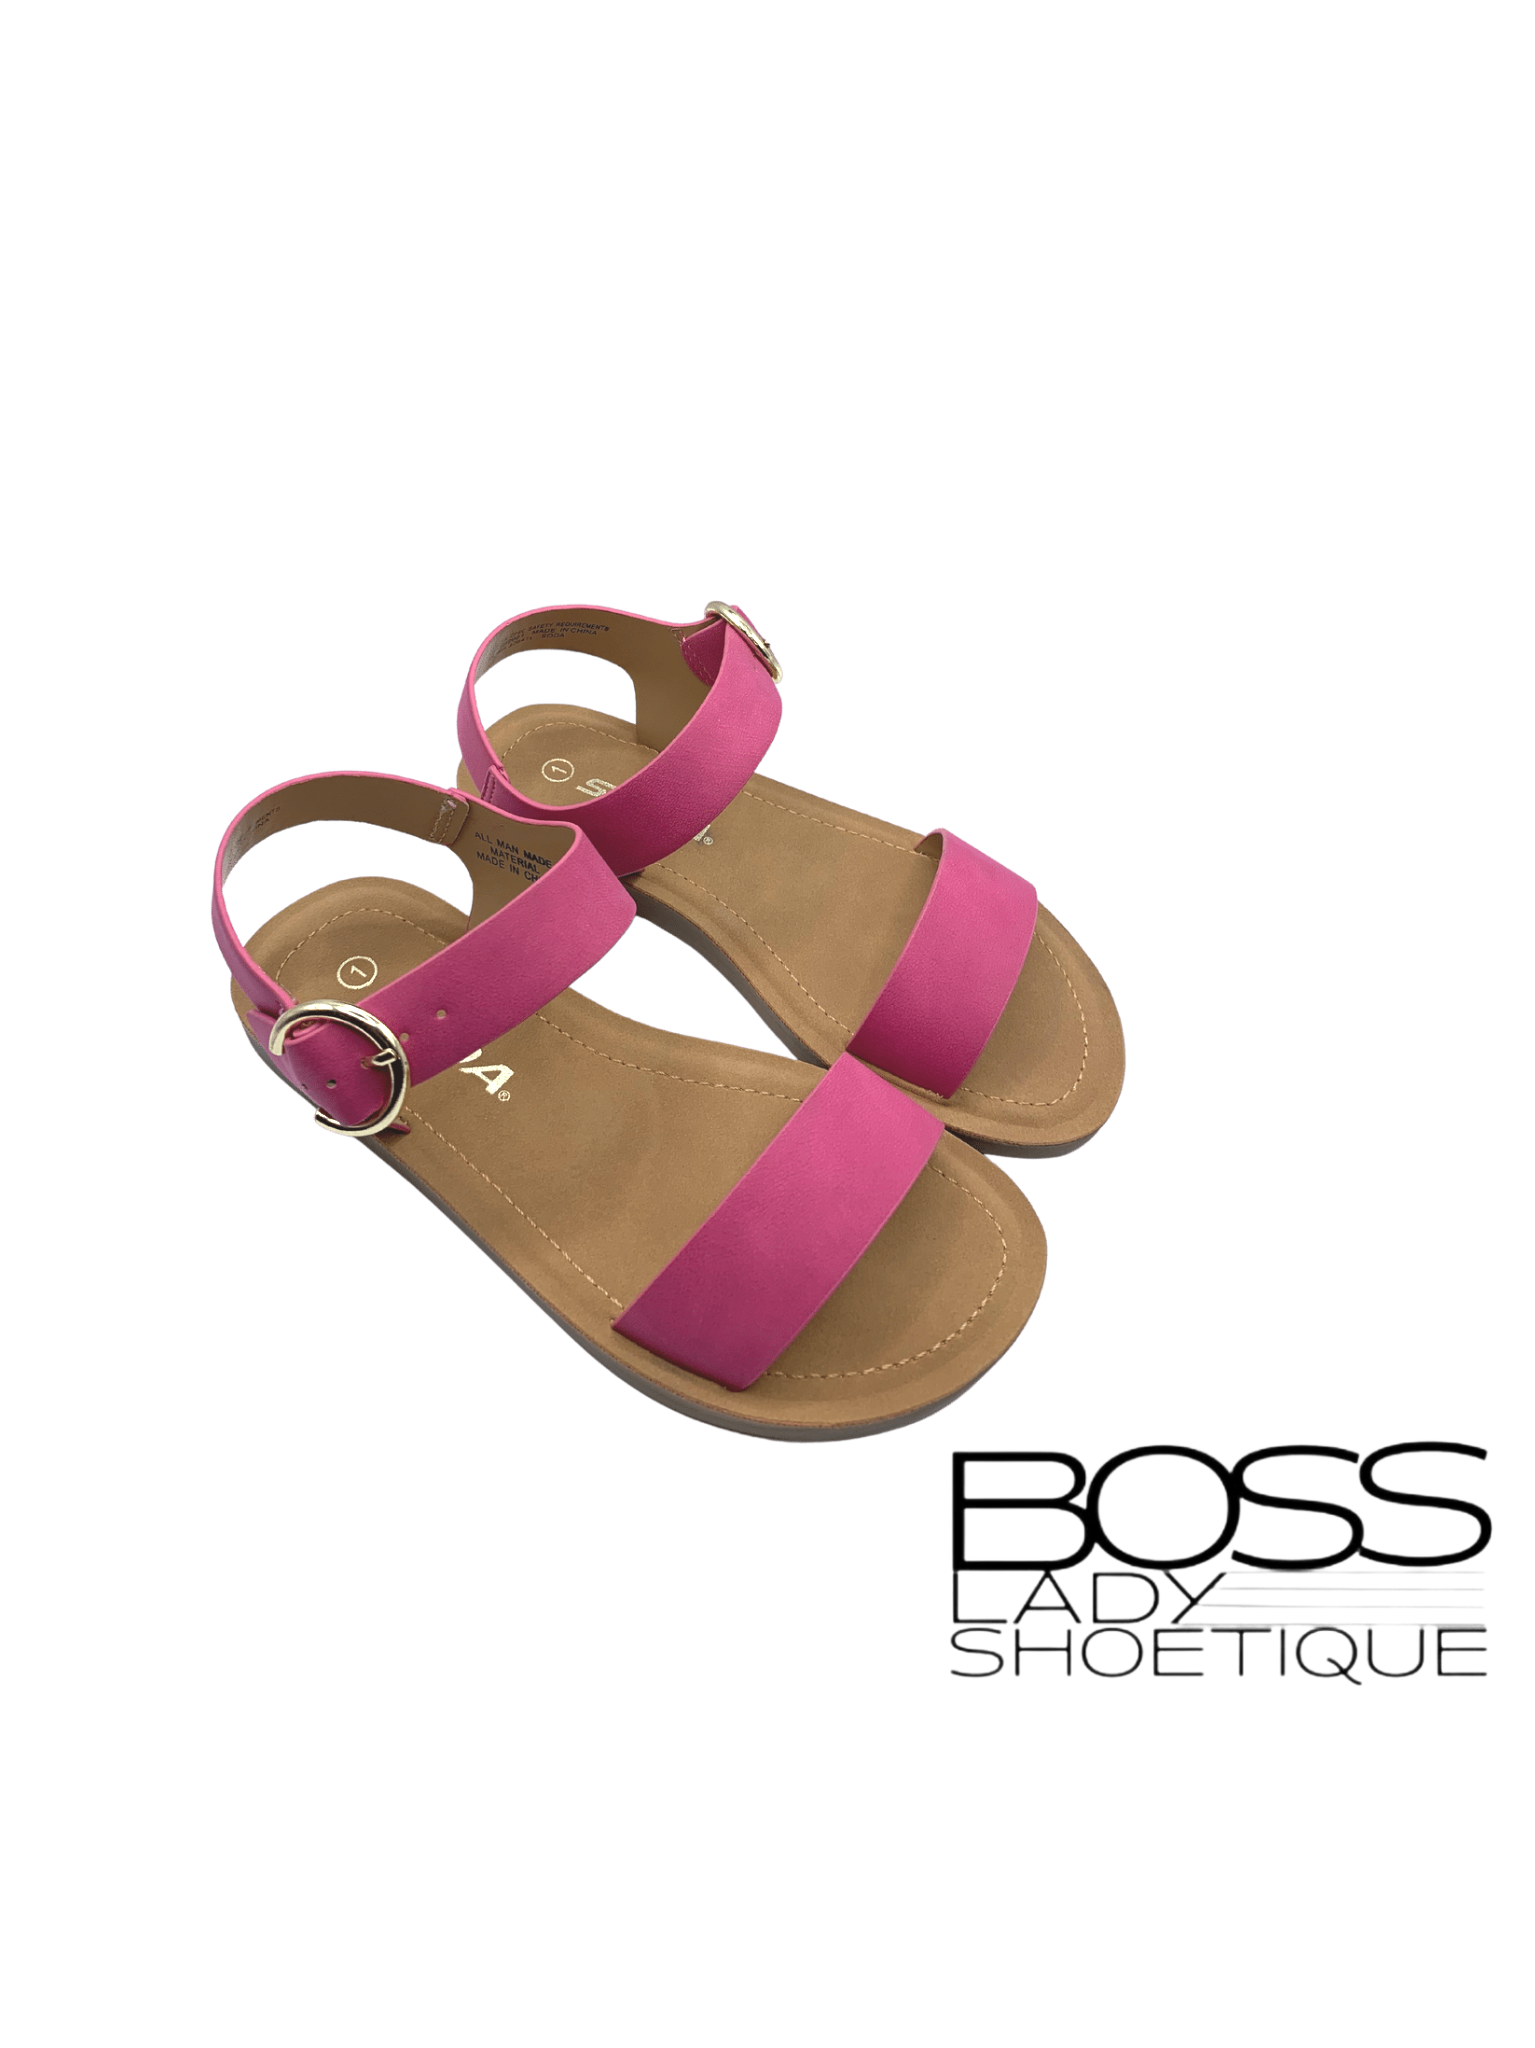 Compel Sandals- Kids - Boss Lady Shoetique 